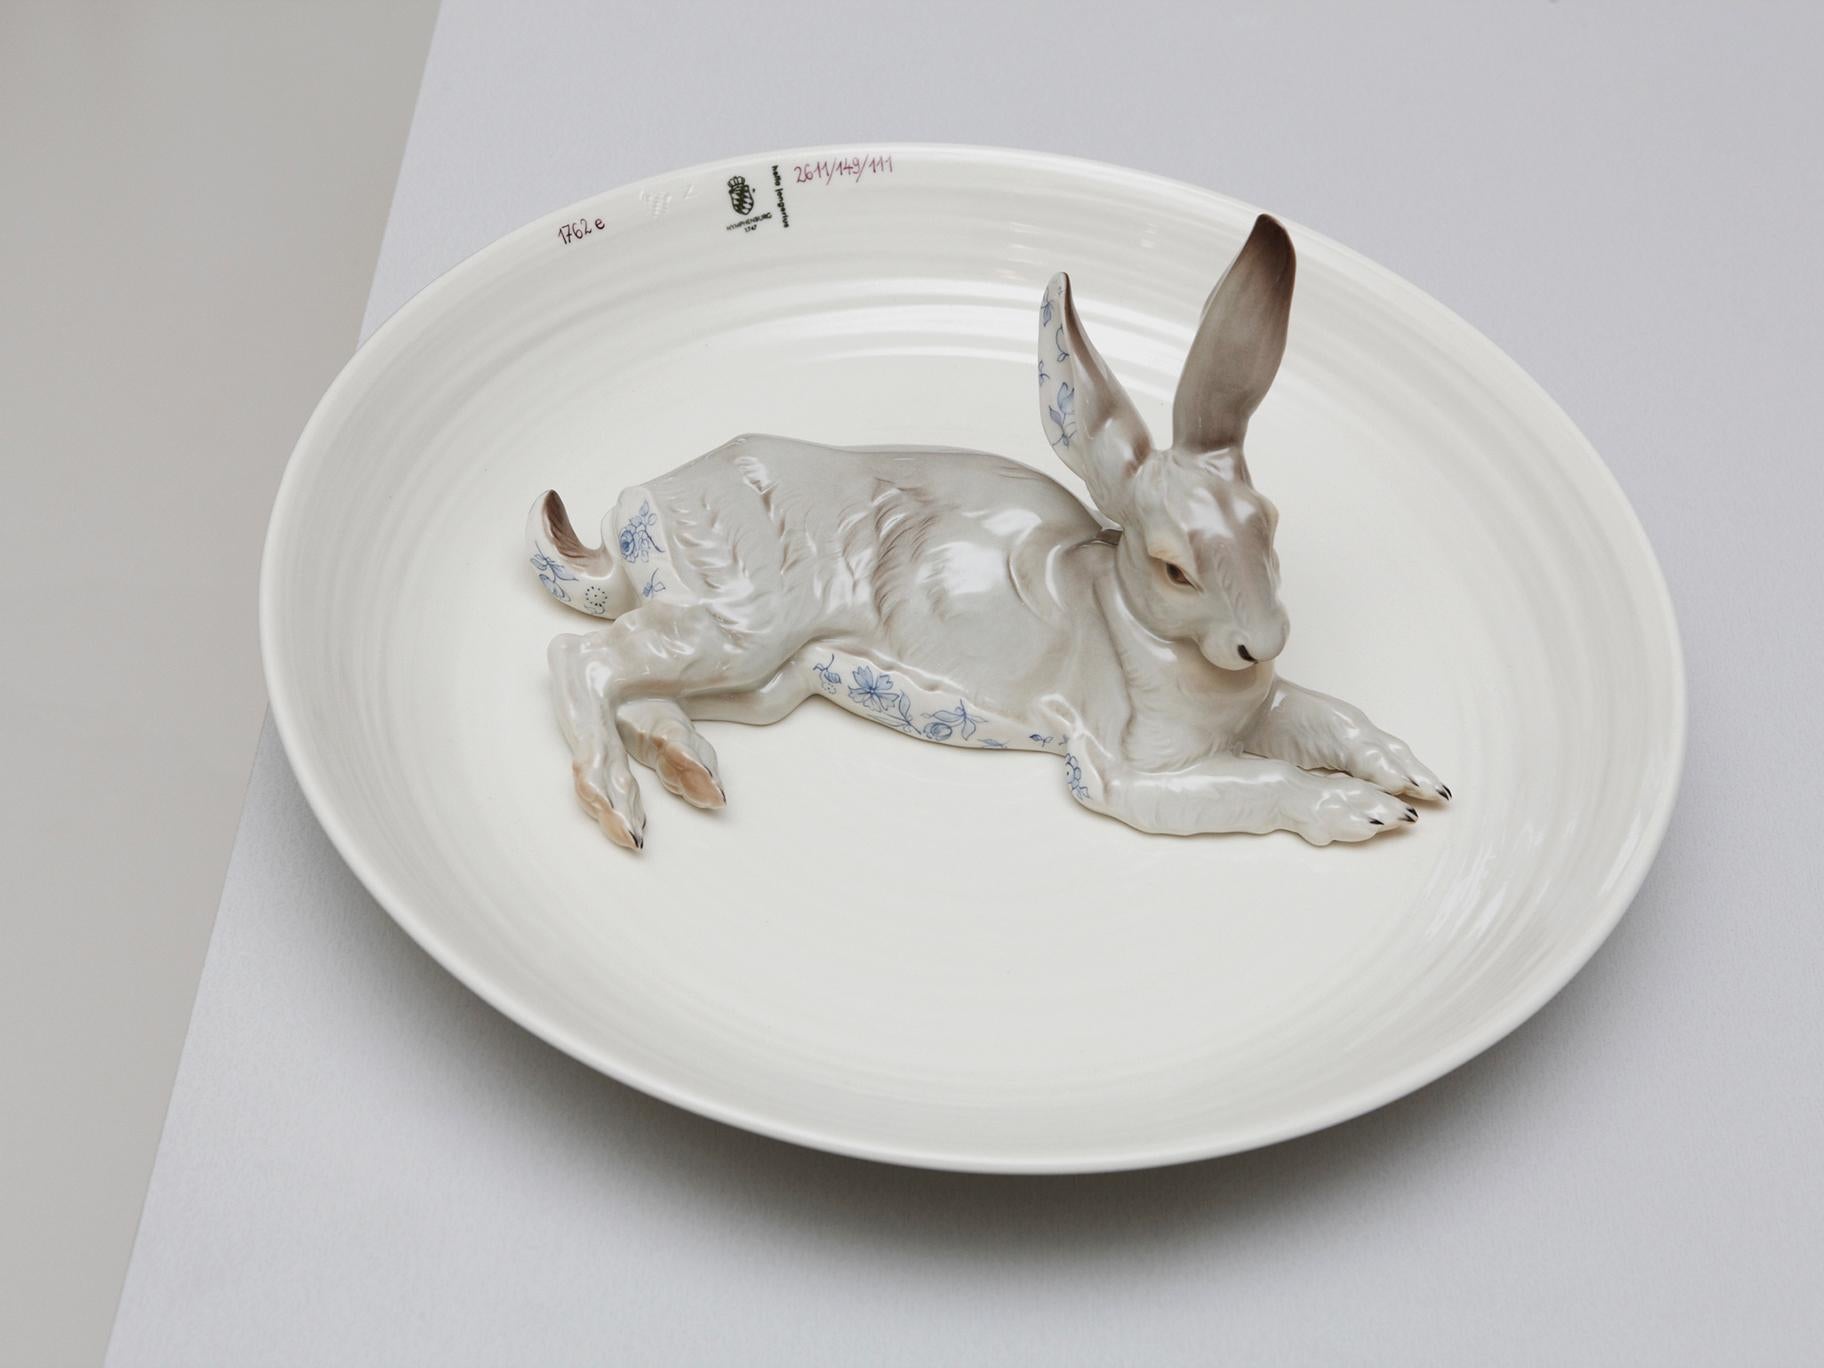 Cet objet fait partie d'une série de bols pour animaux conçus par Hella Jongerius pour la Manufacture de porcelaine de Nymphenburg. Le grand bol avec un lapin orné d'un motif floral bleu est l'objet idéal de discussion. En tant qu'objet décoratif,